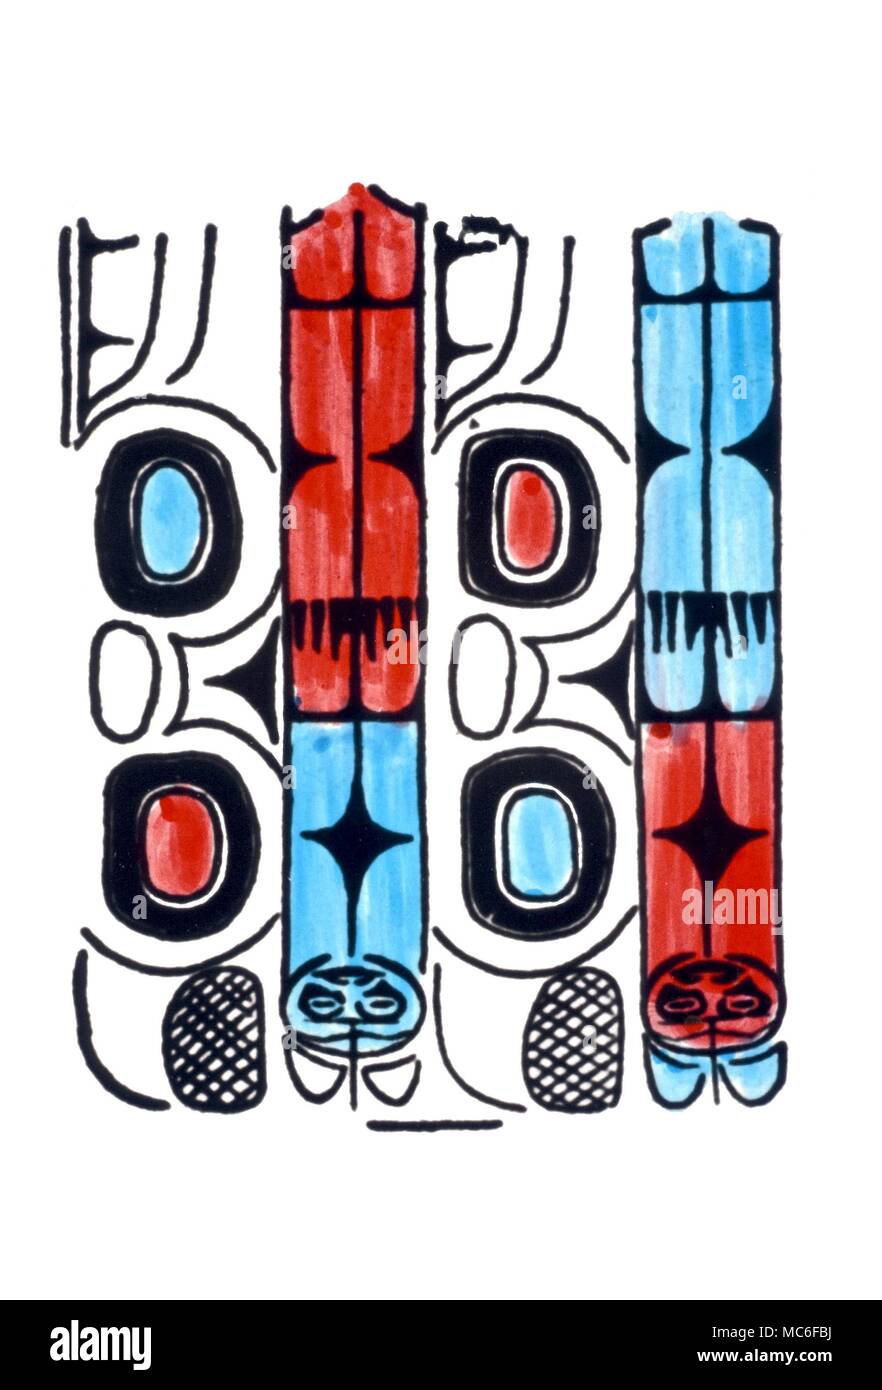 Il gioco d'azzardo aderisce a volte utilizzato nella predizione del futuro. Da disegni di tali bastoni utilizzati dalla tribù Haida, Queen Charlotte Islands. rom 'del diavolo Picture-Books' di Van Rensselaer, 1892 Foto Stock